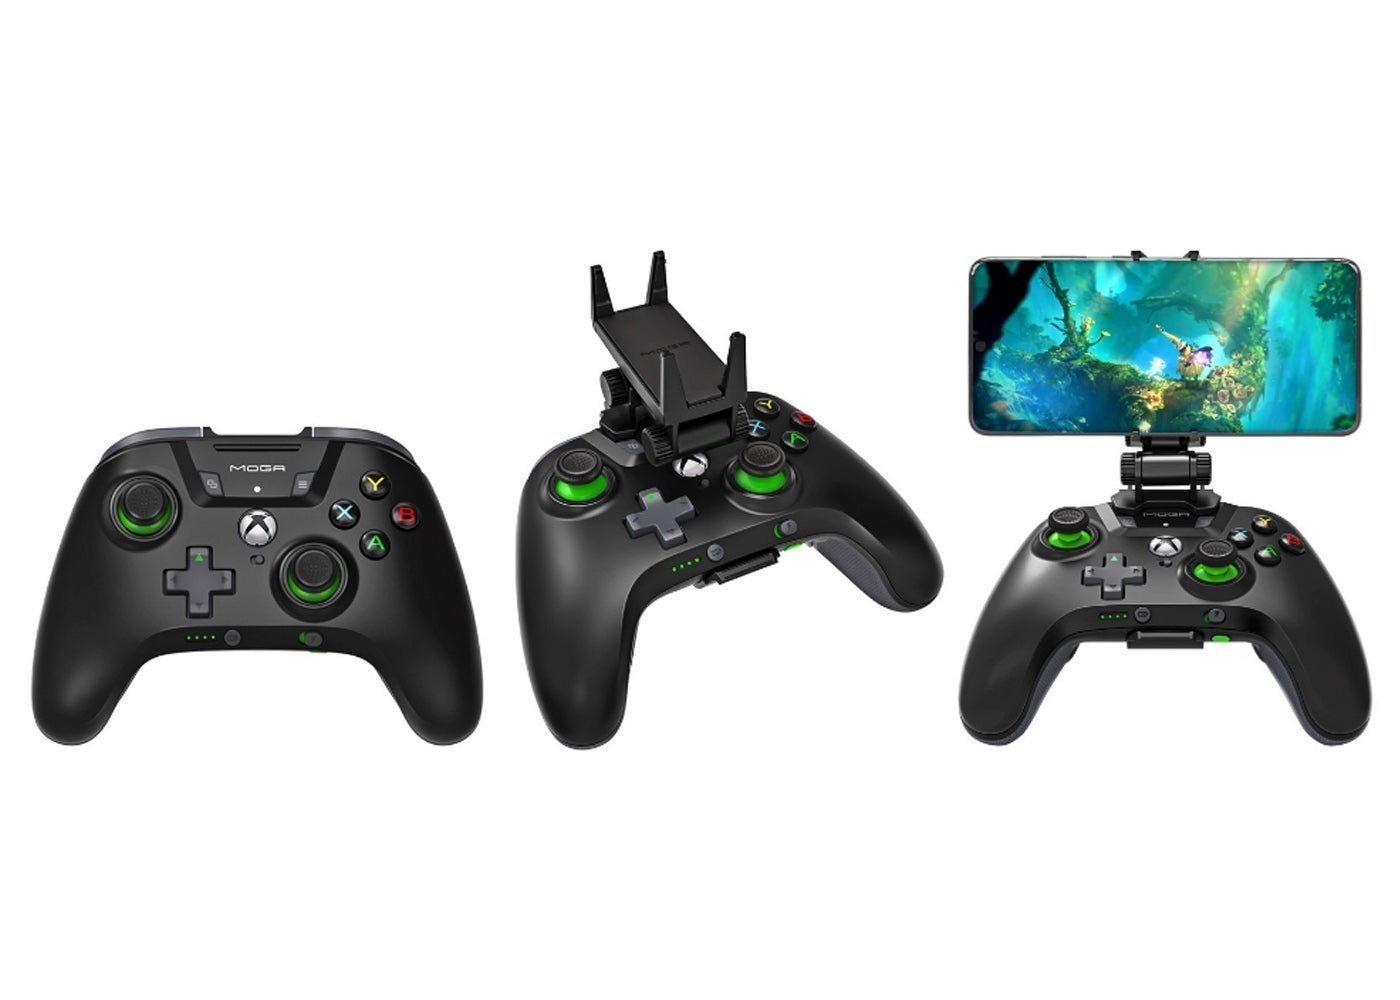 El cloud gaming de Xbox incluirá mandos para tu móvil tan "pros" como estos